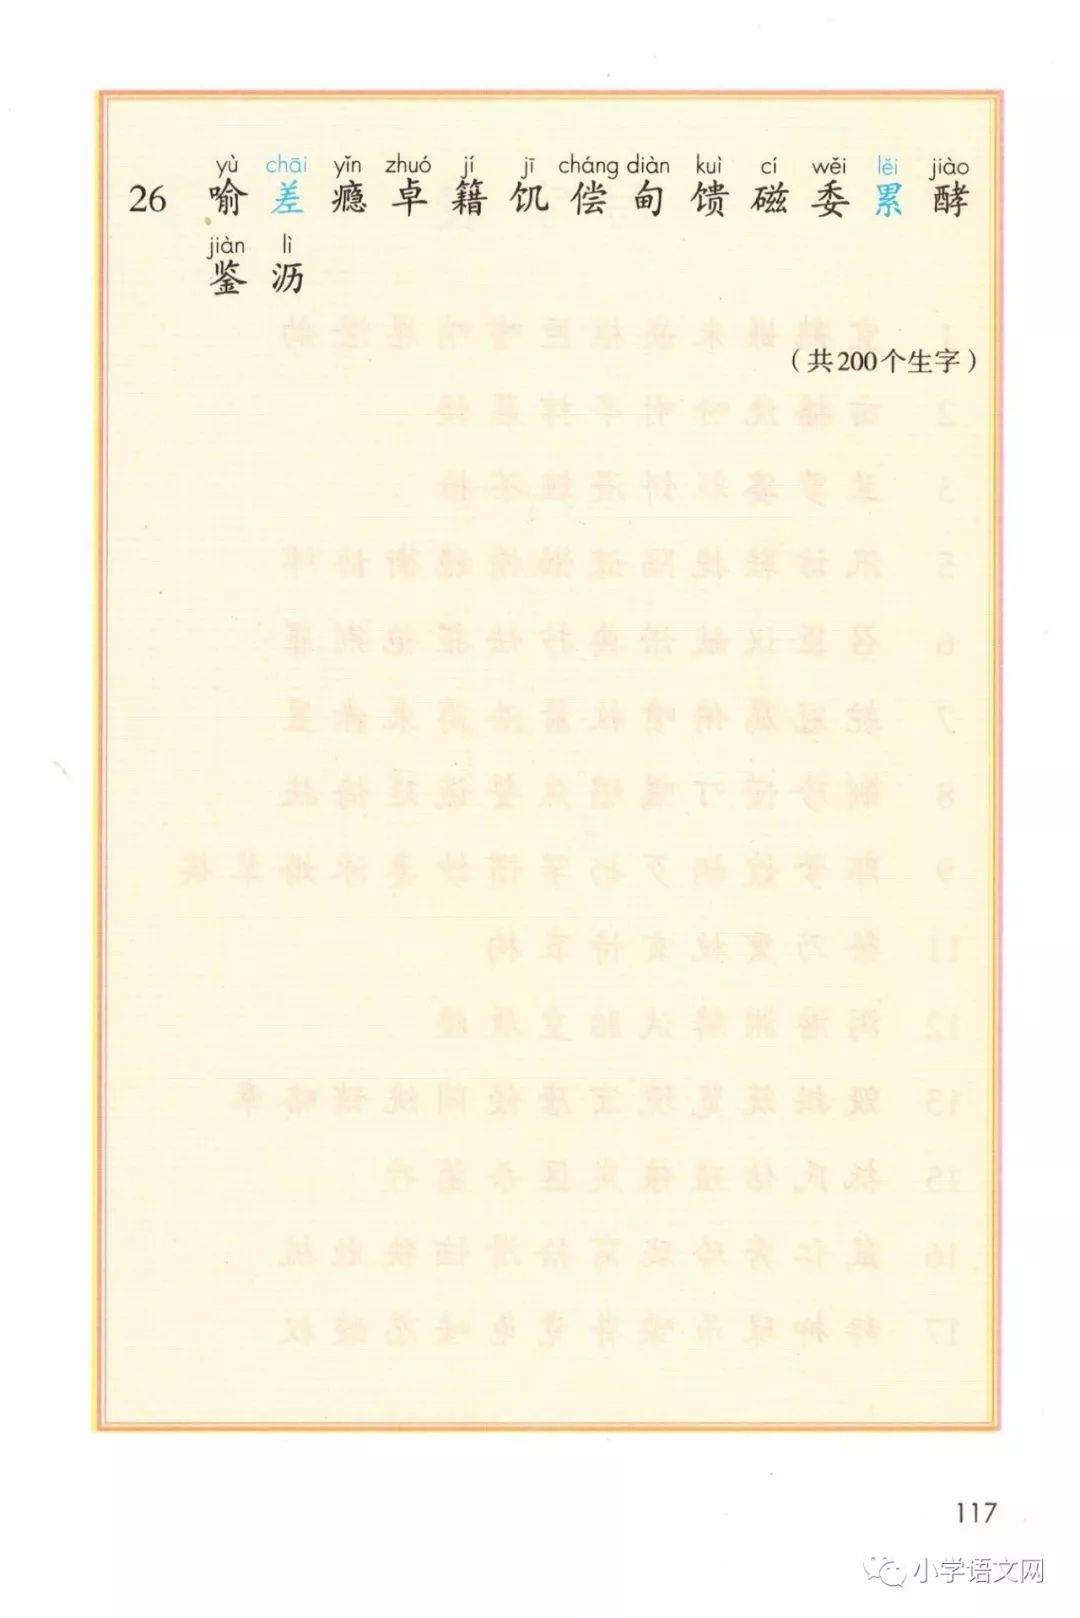 识字表(Page117)